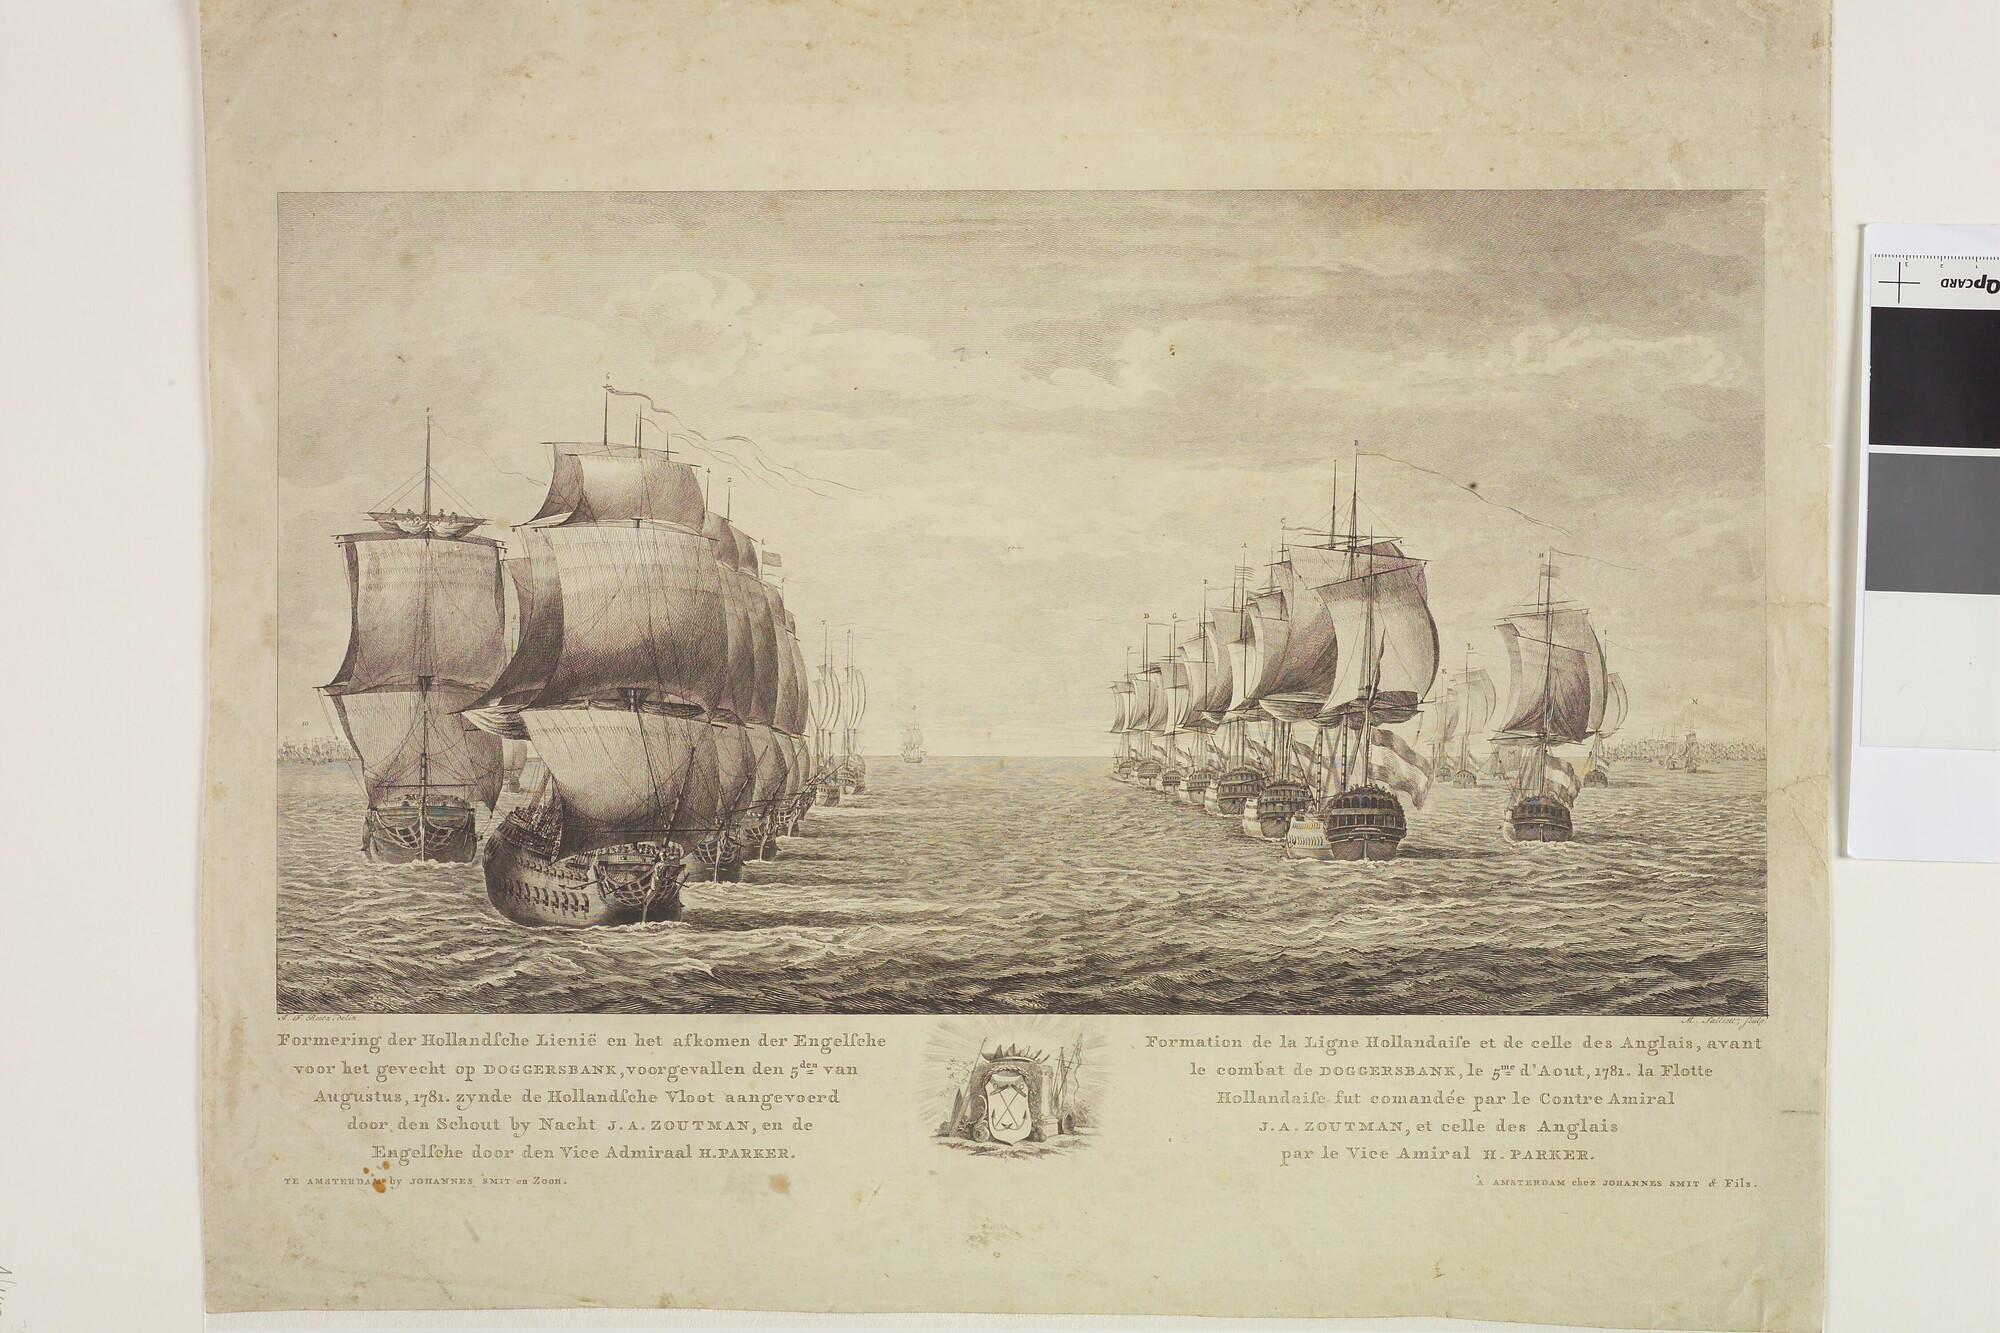 A.0149(0693); 'Formering der Holandsche Lieniën en het afkomen der Engelsche voor het gevecht op Doggersbank voorgevallen den 5den augustus,1781.'; prent